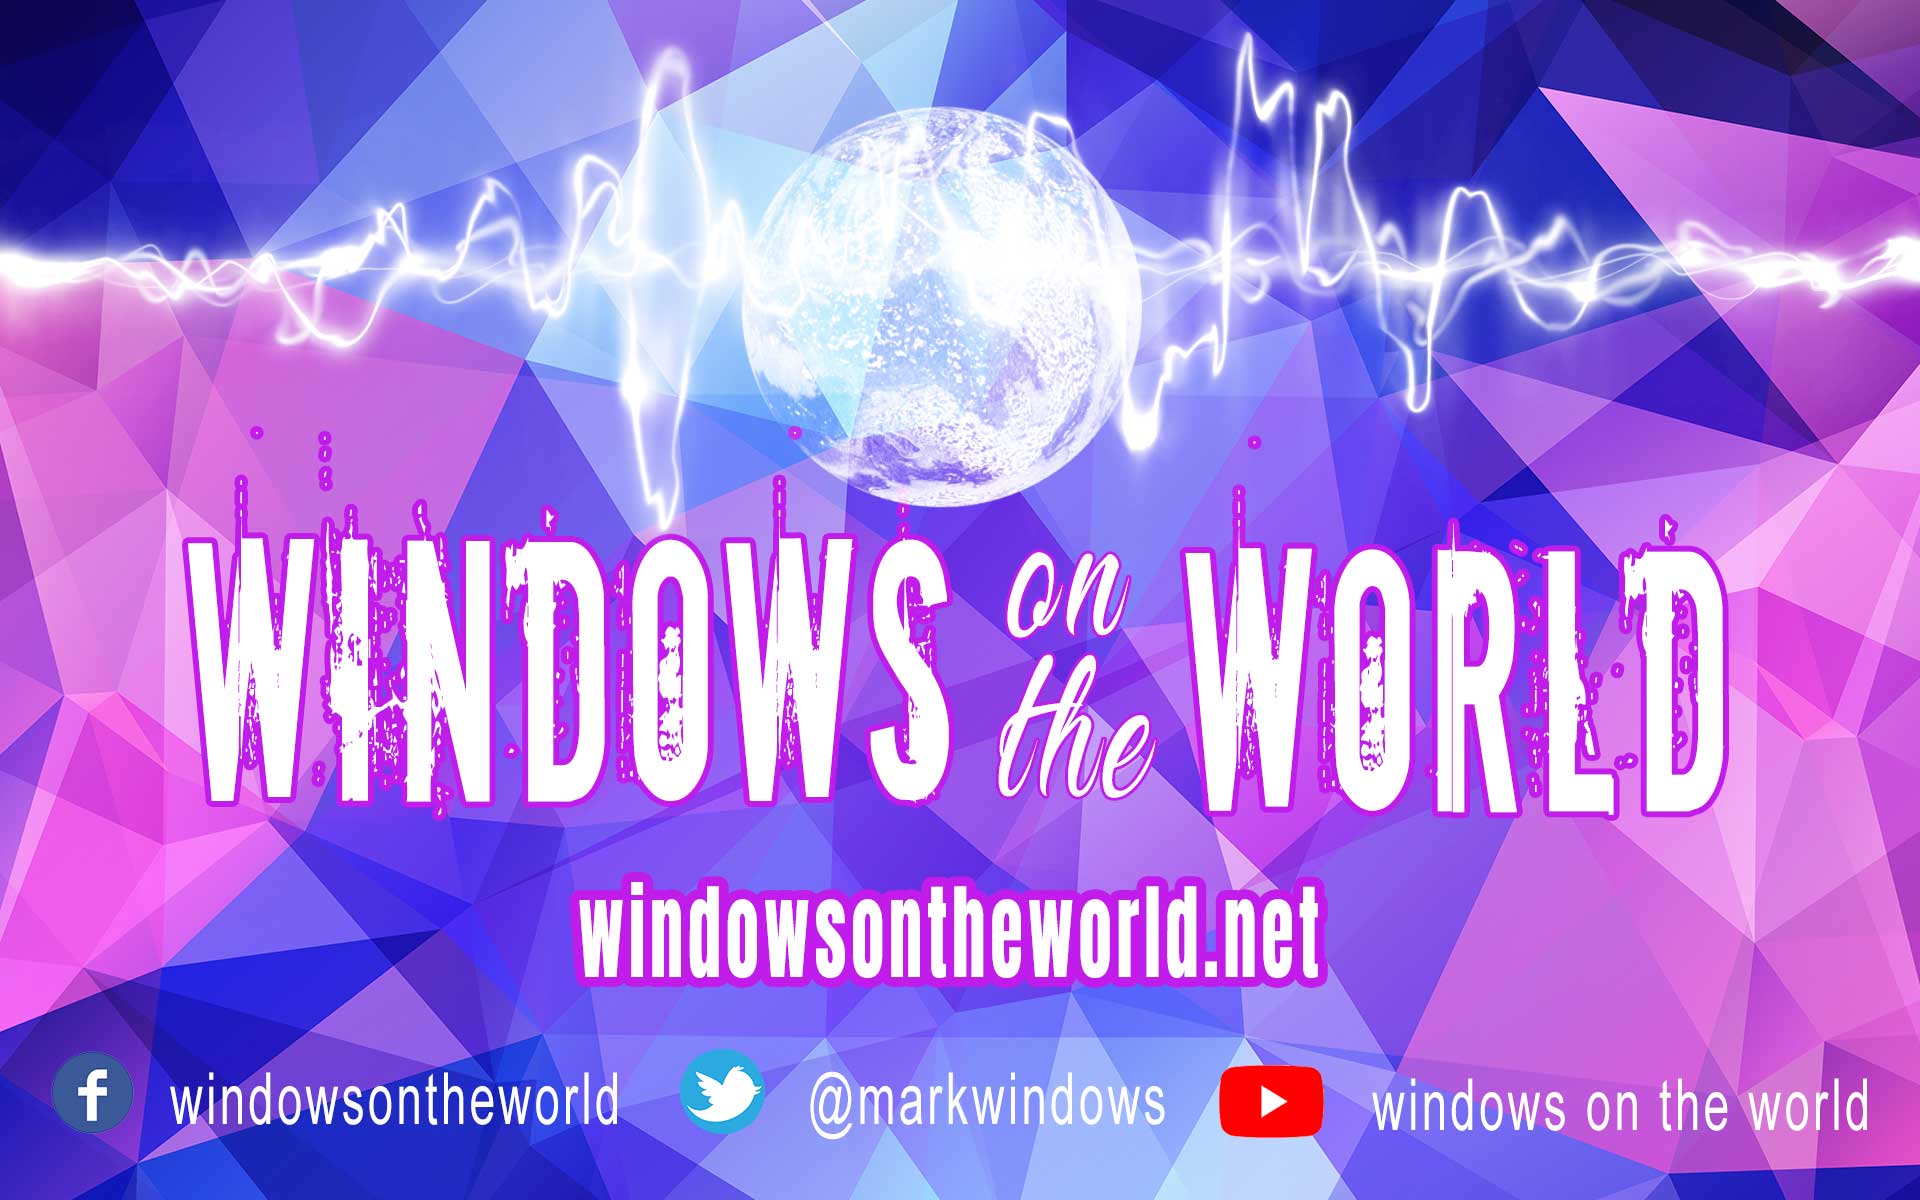 Windowsontheworld.net